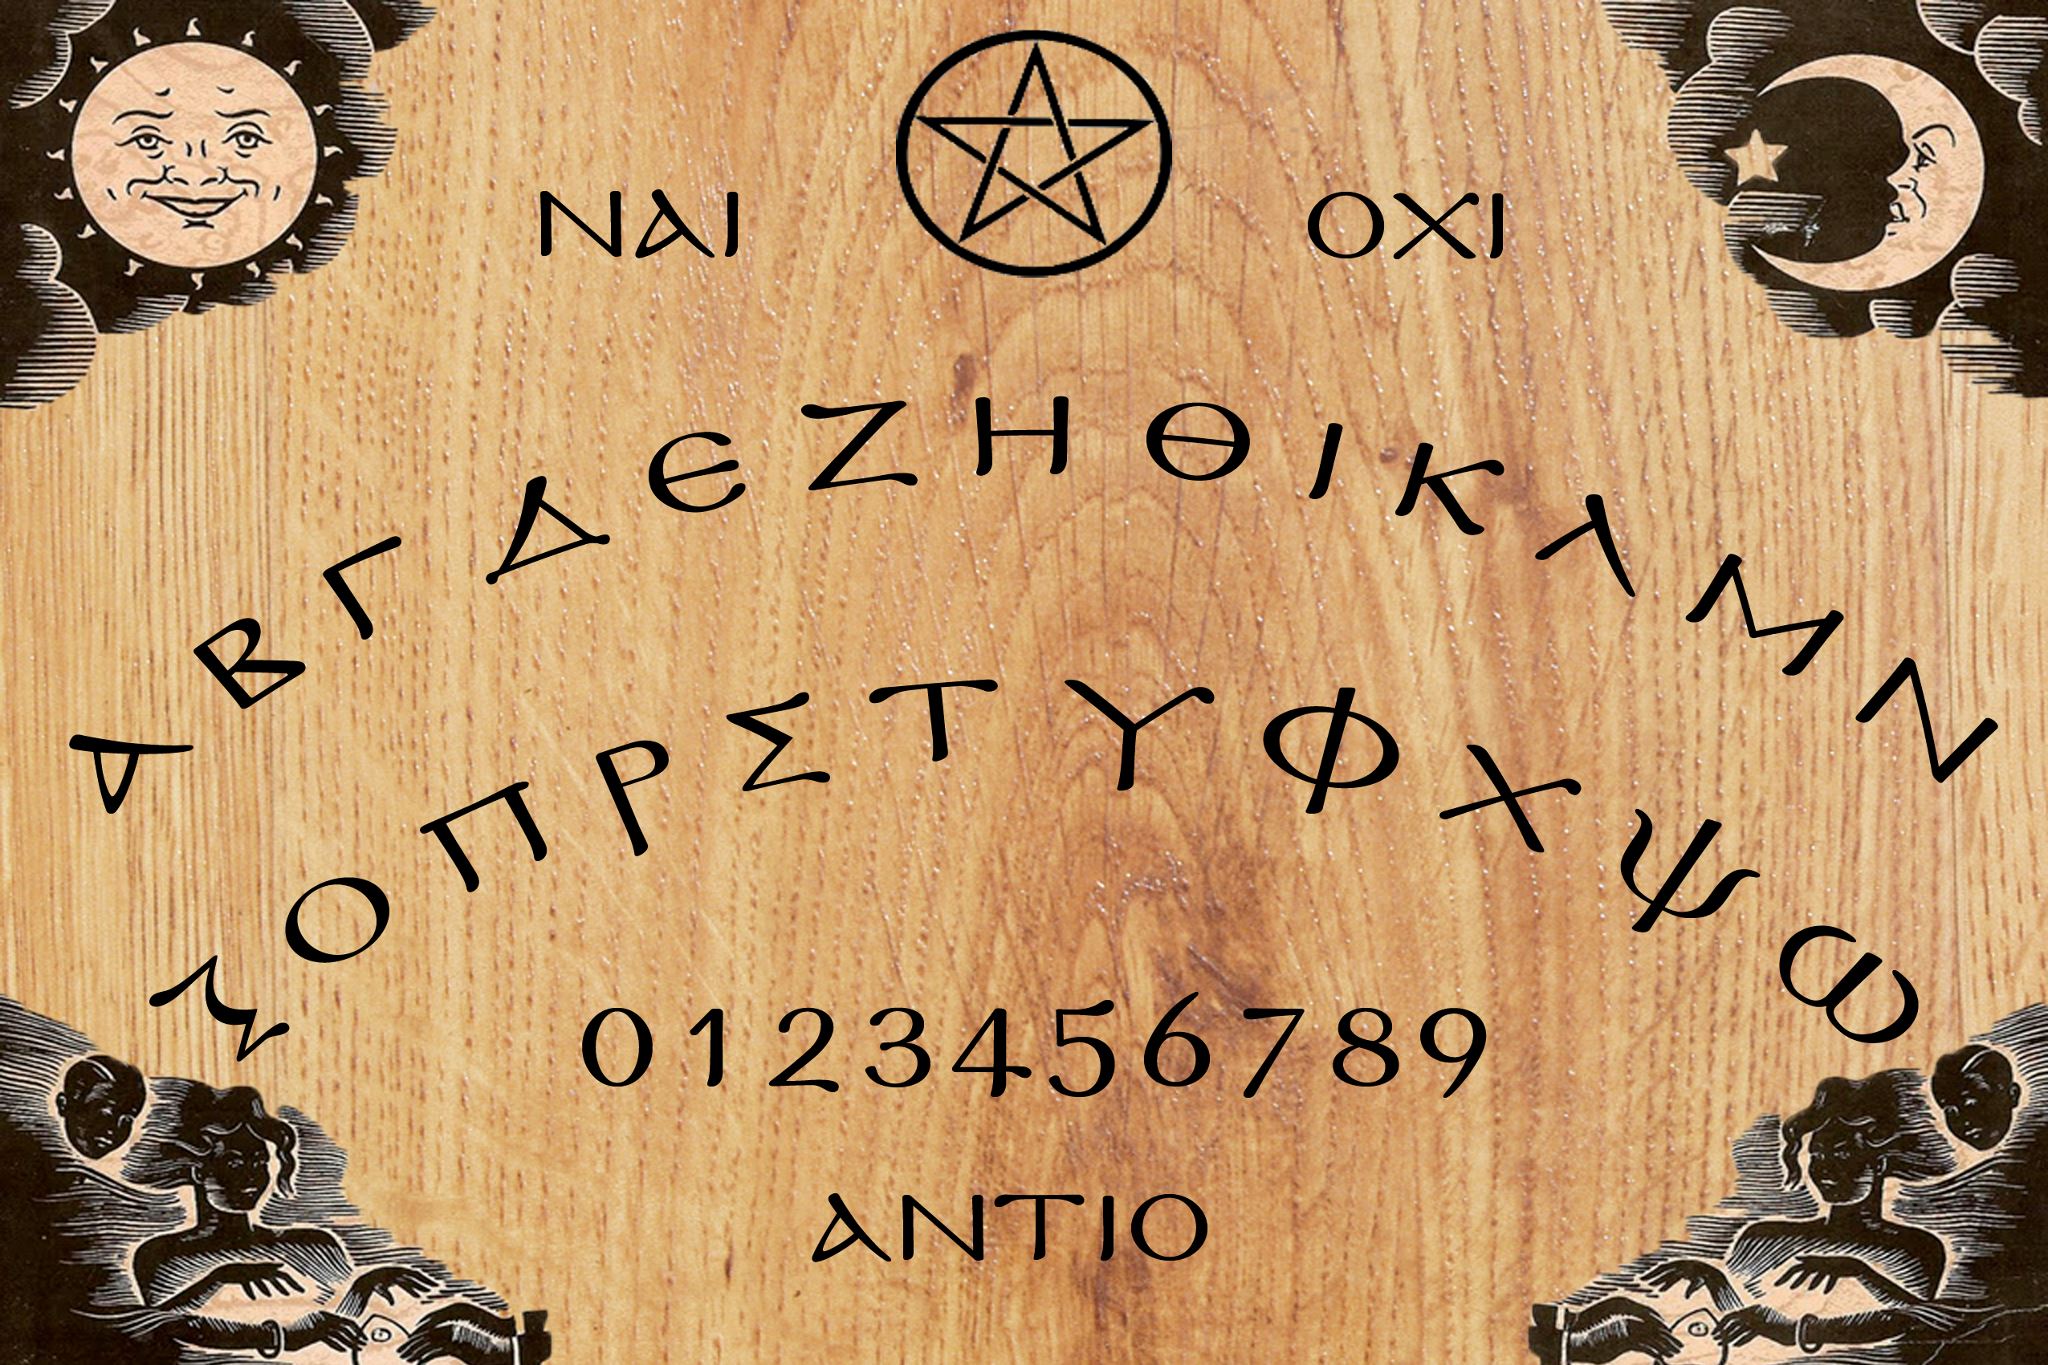 Ο Πίνακας Ouija και Πως να τον Χειριστείτε